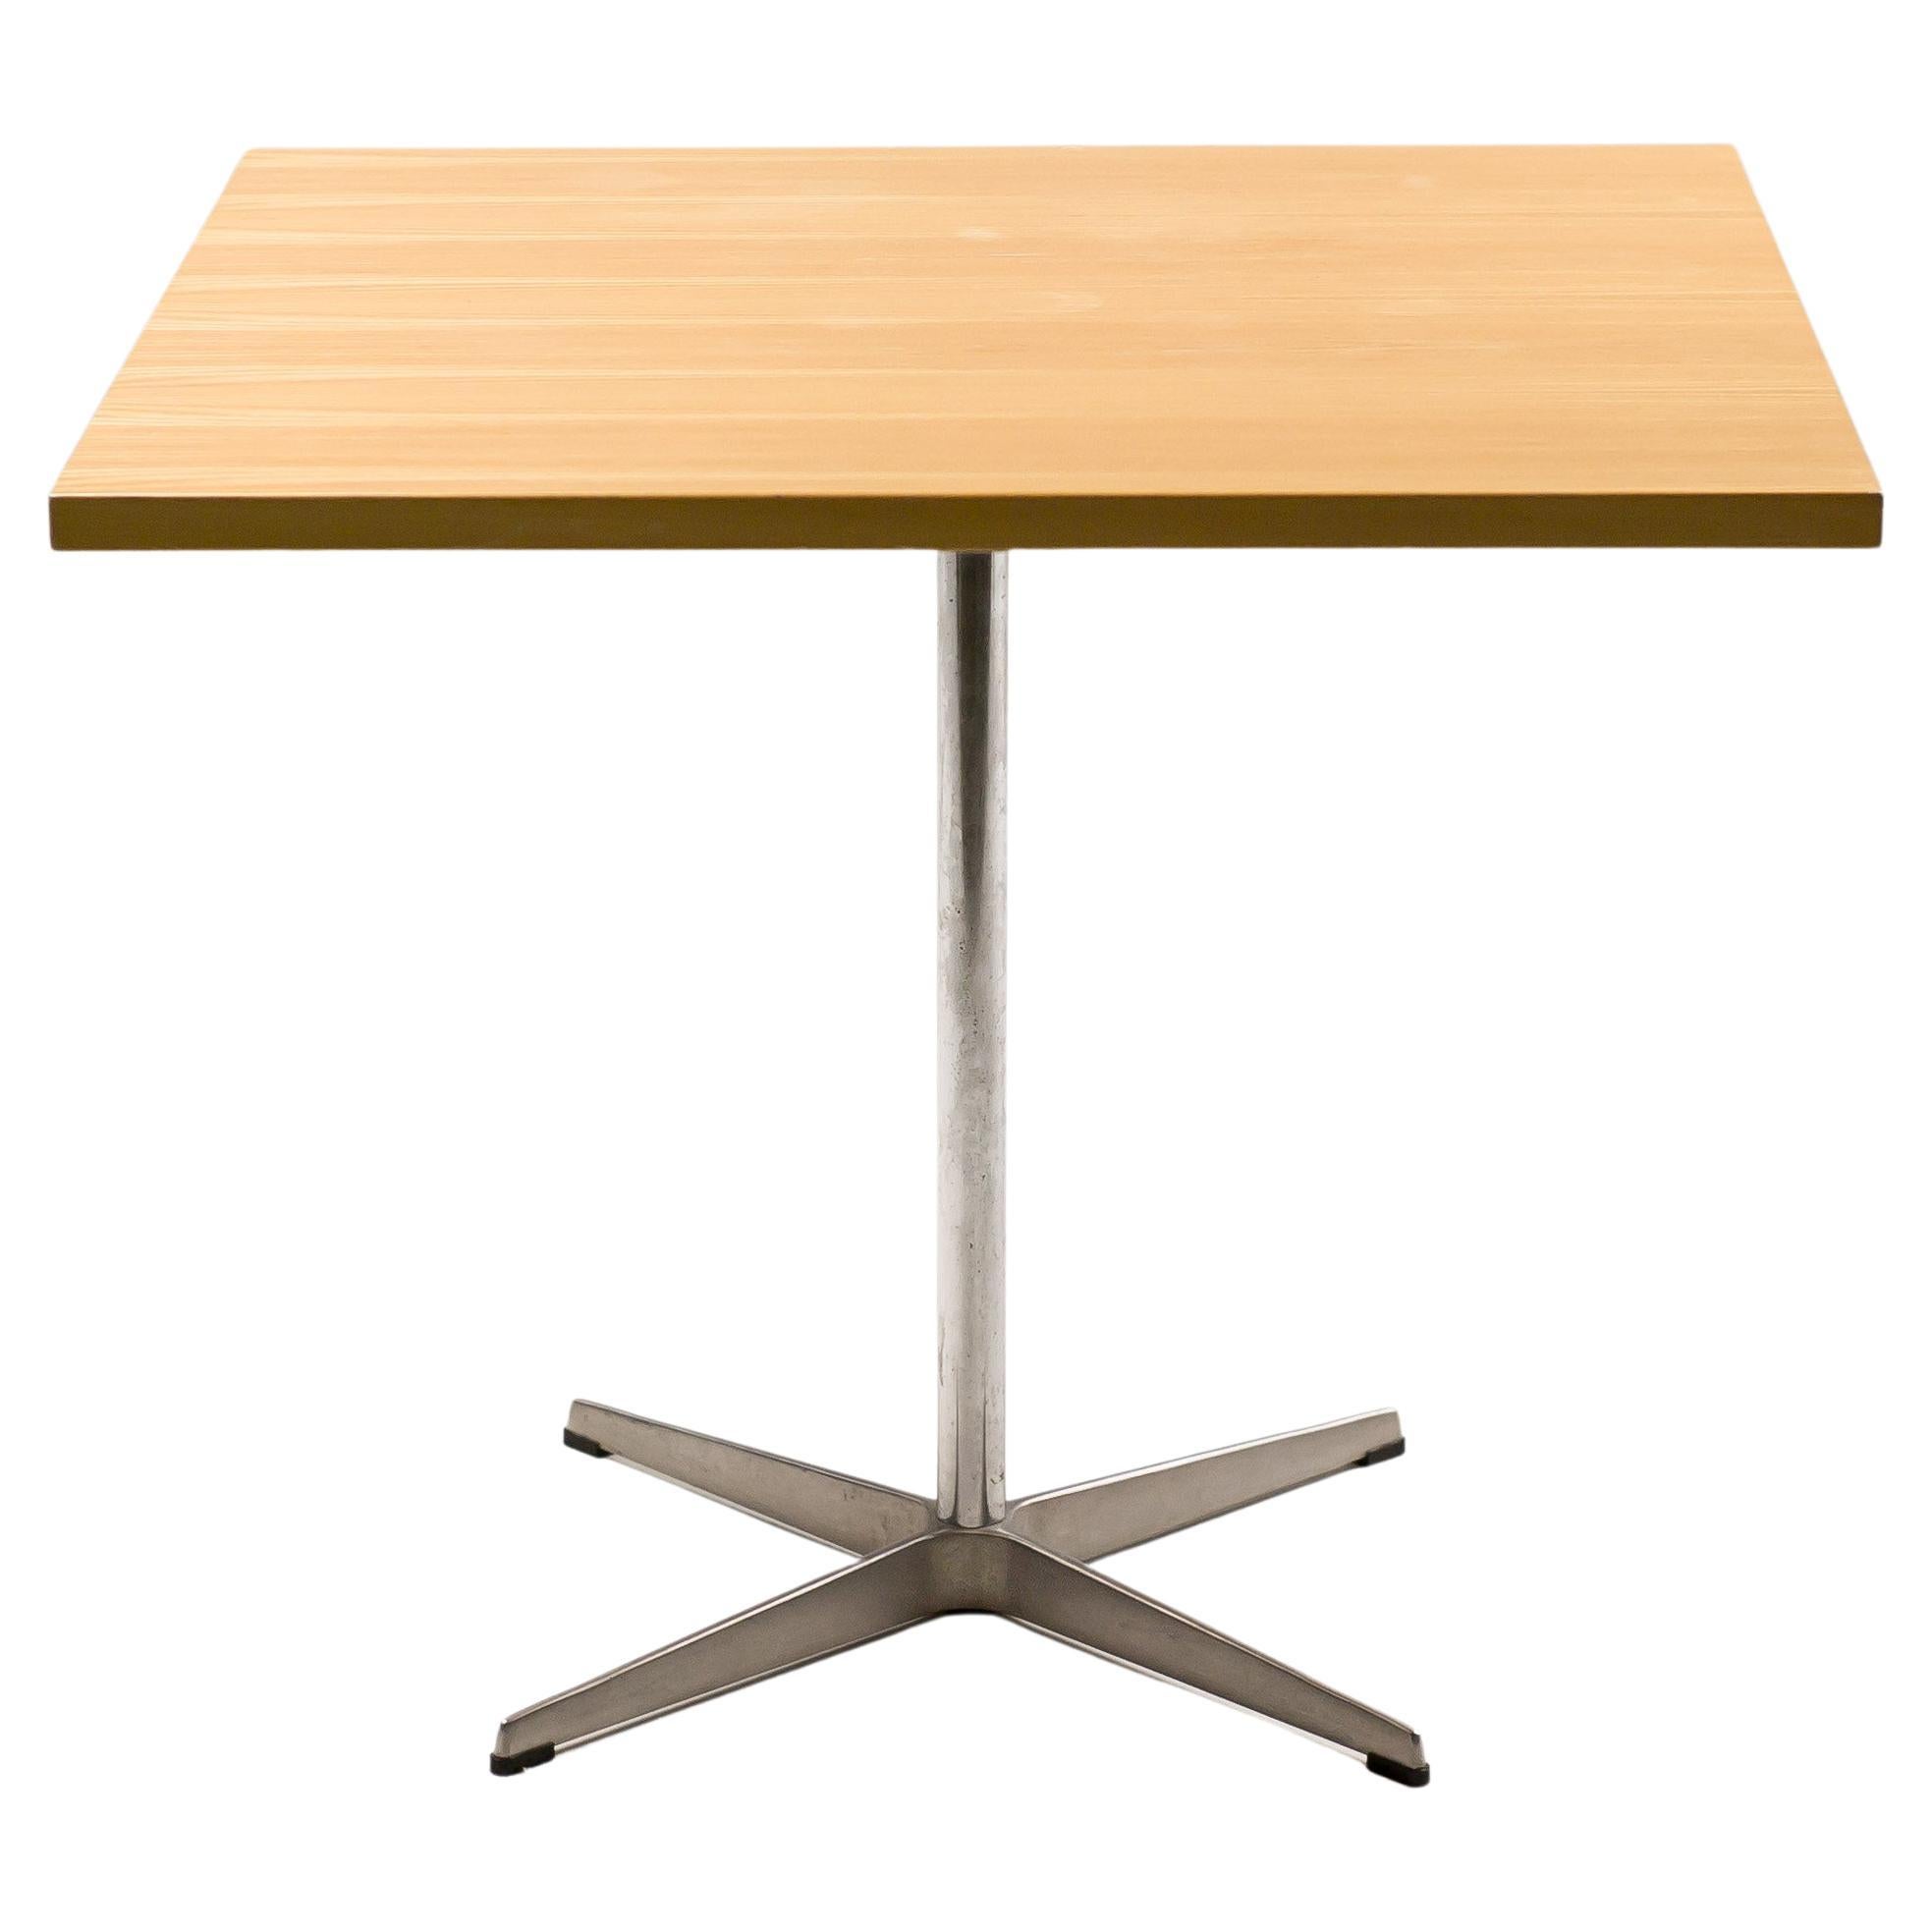 Shaker Table by Arne Jacobsen 